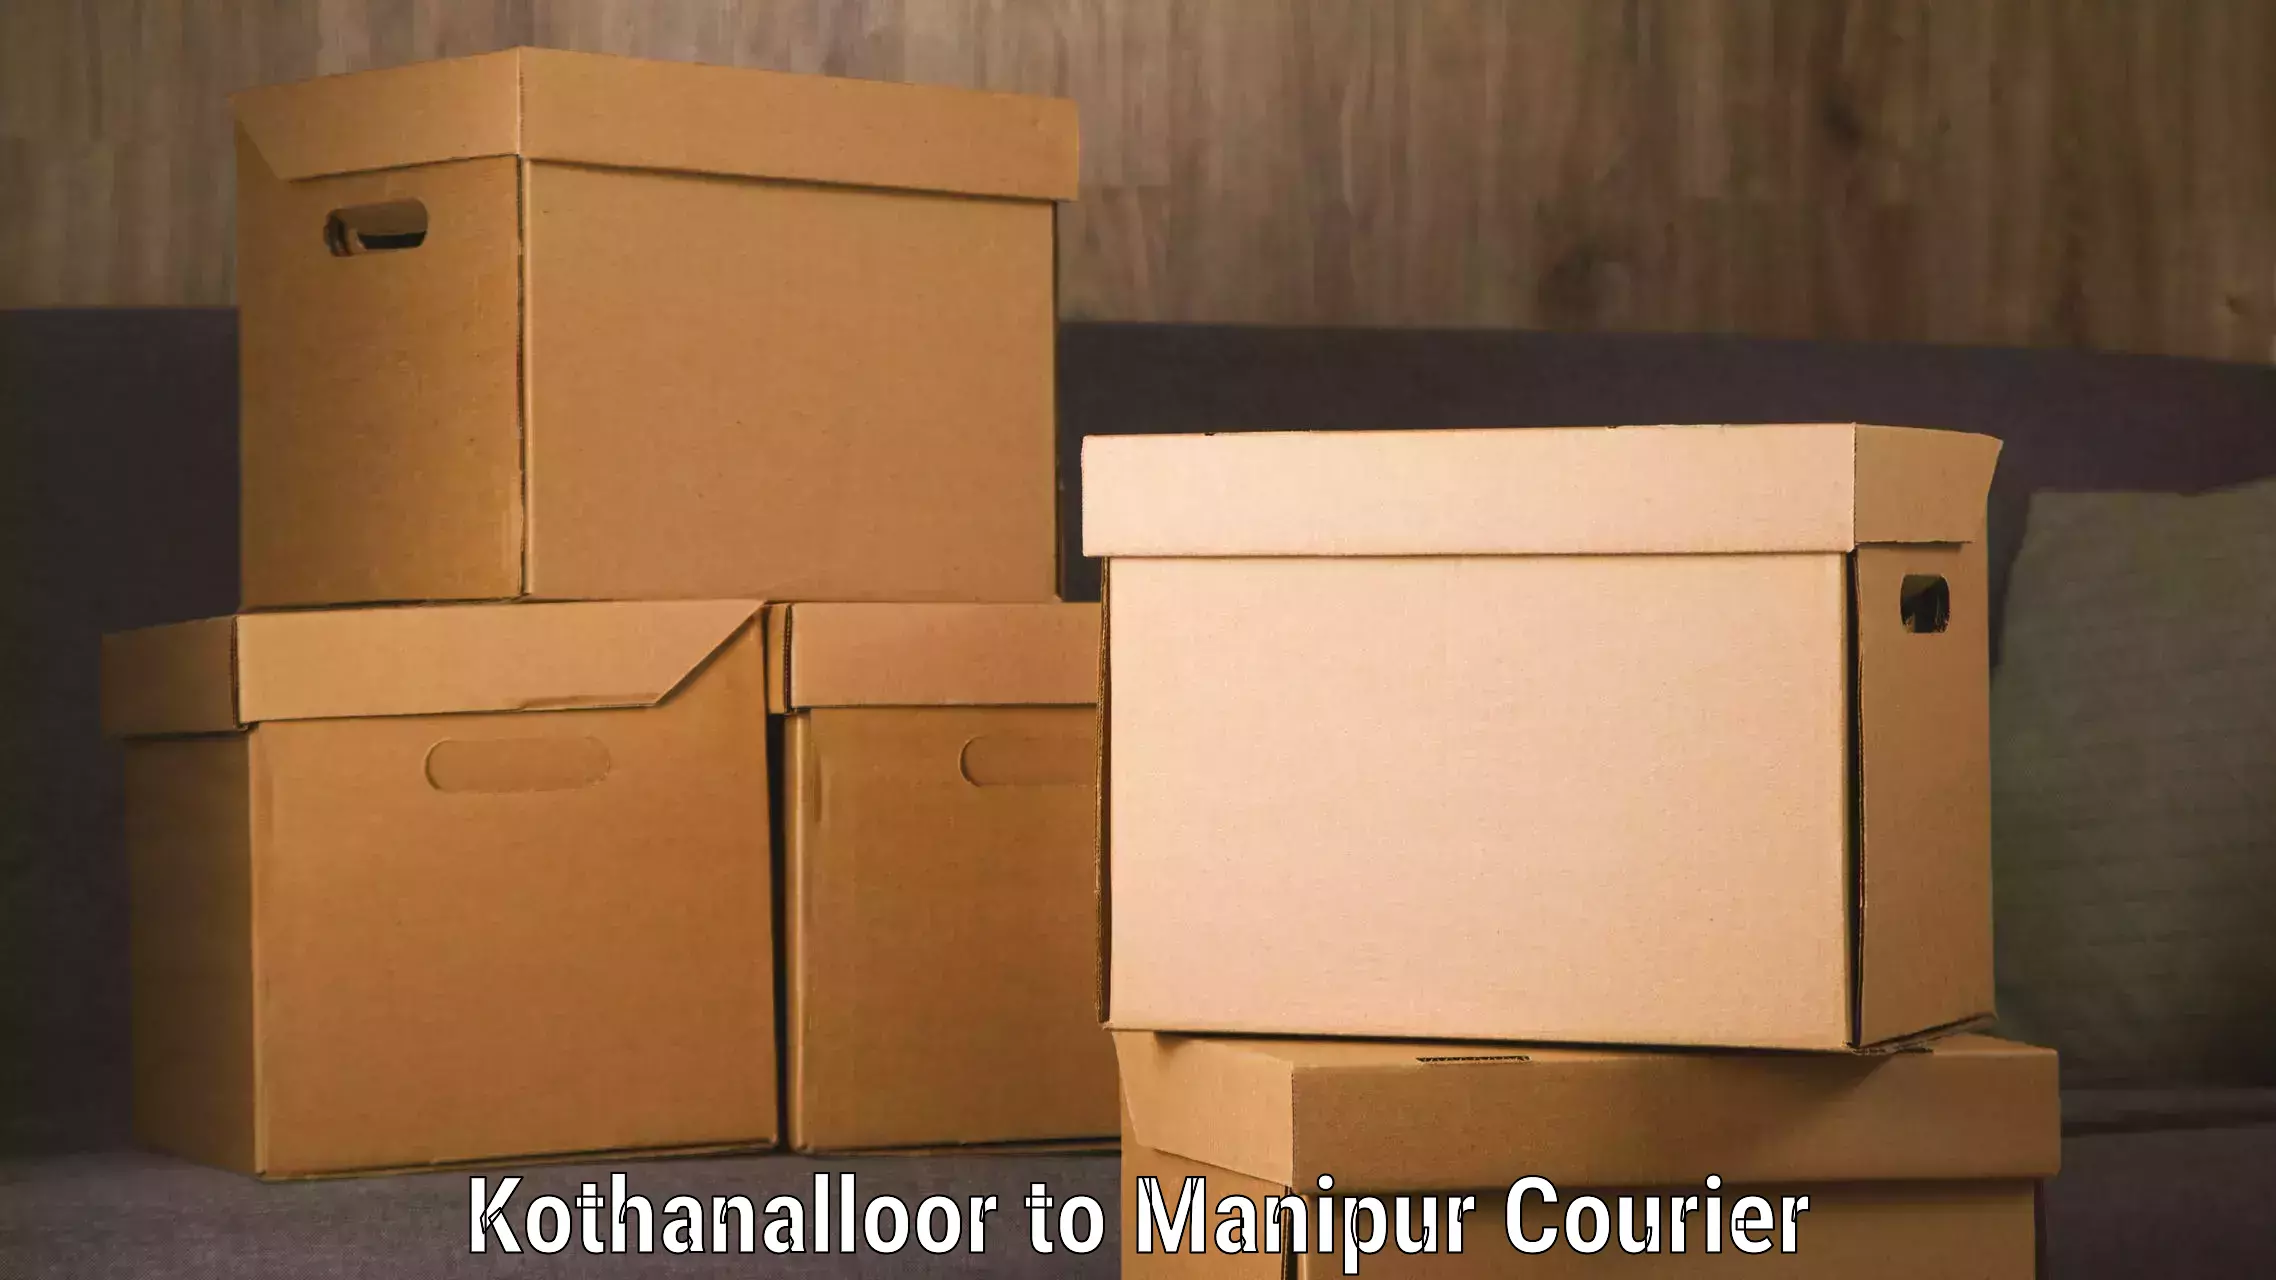 Smart courier technologies Kothanalloor to Chandel